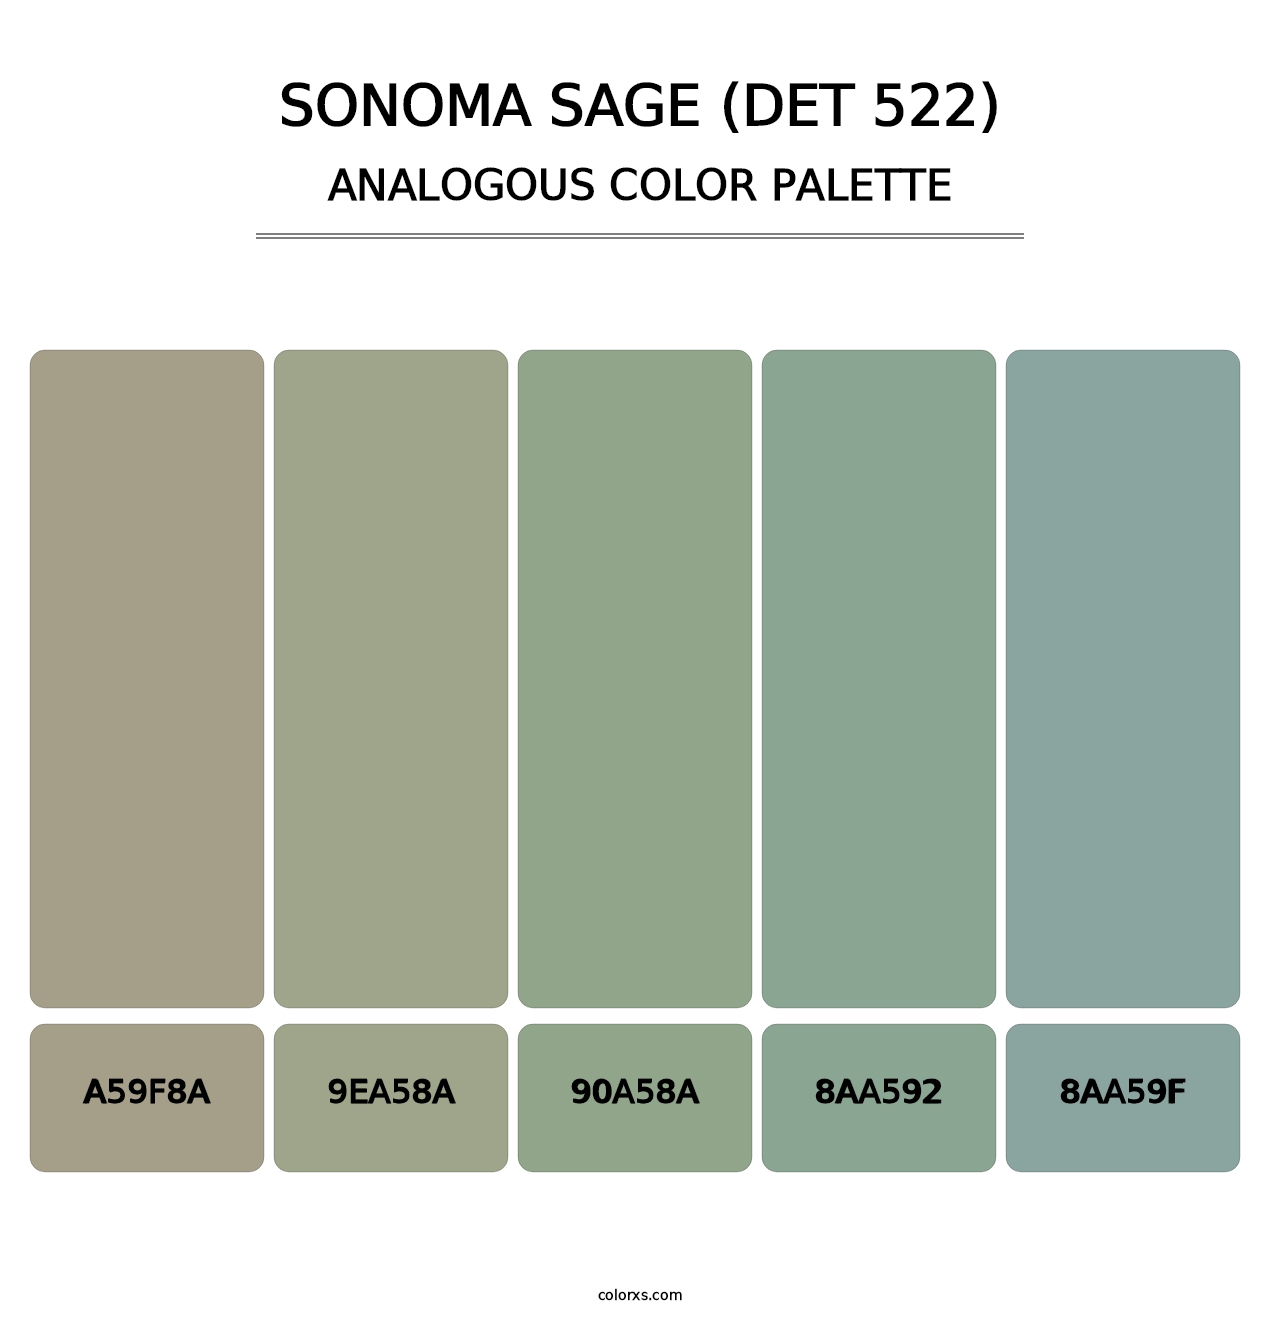 Sonoma Sage (DET 522) - Analogous Color Palette